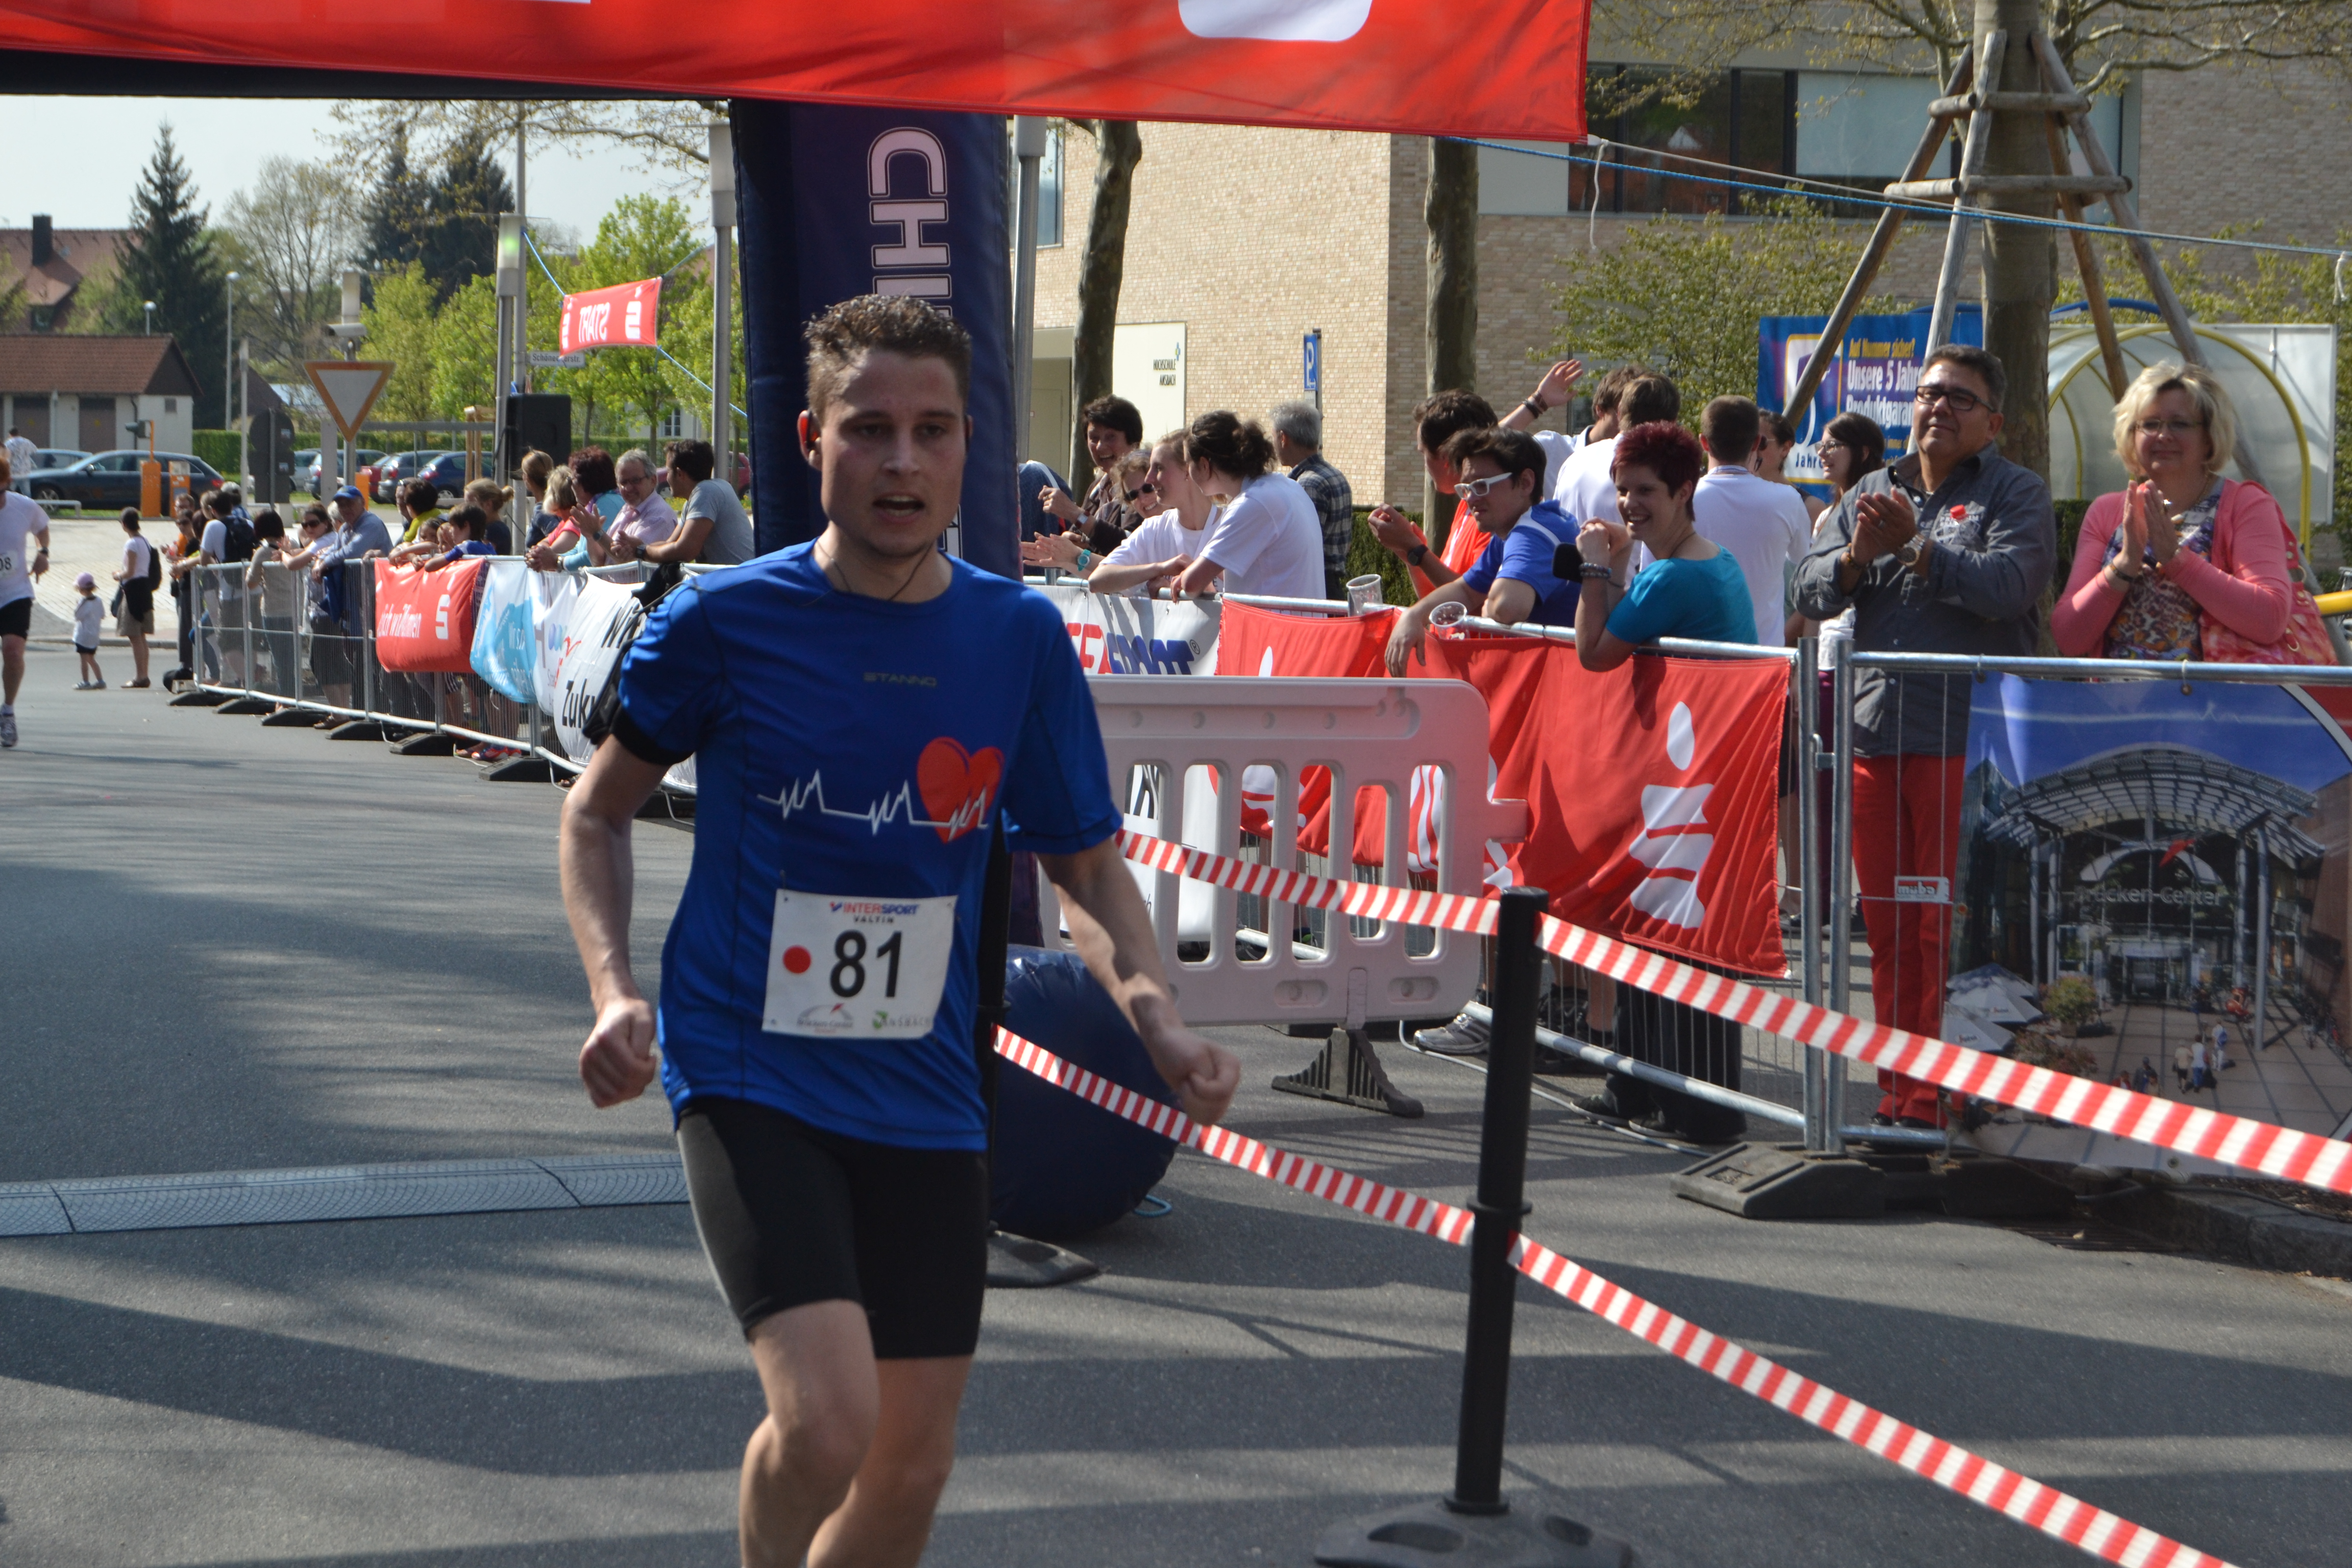 Ansbacher Halbmarathon 2013